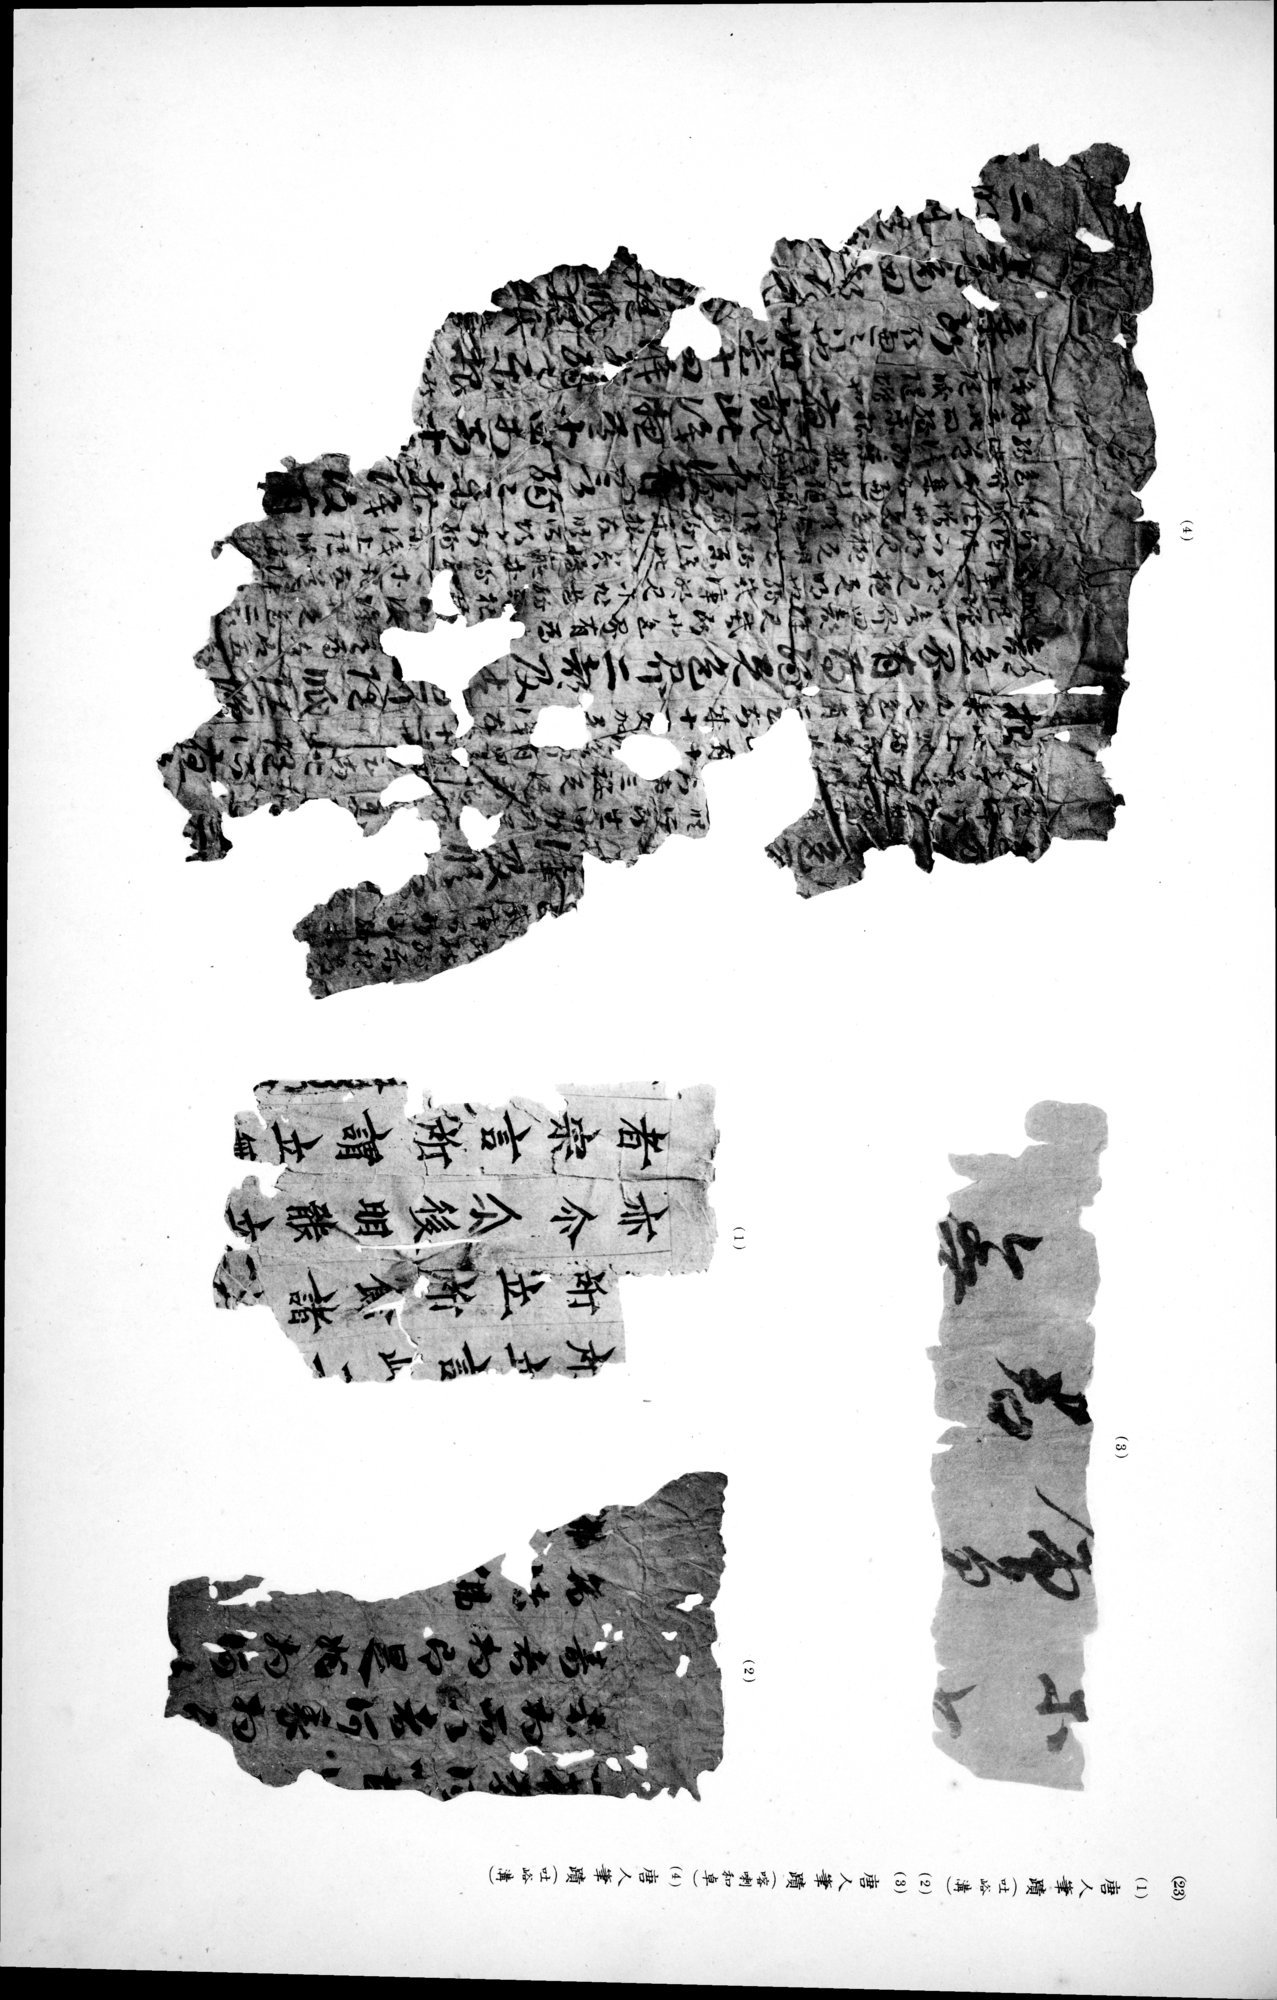 西域考古図譜 : vol.2 / Page 219 (Grayscale High Resolution Image)